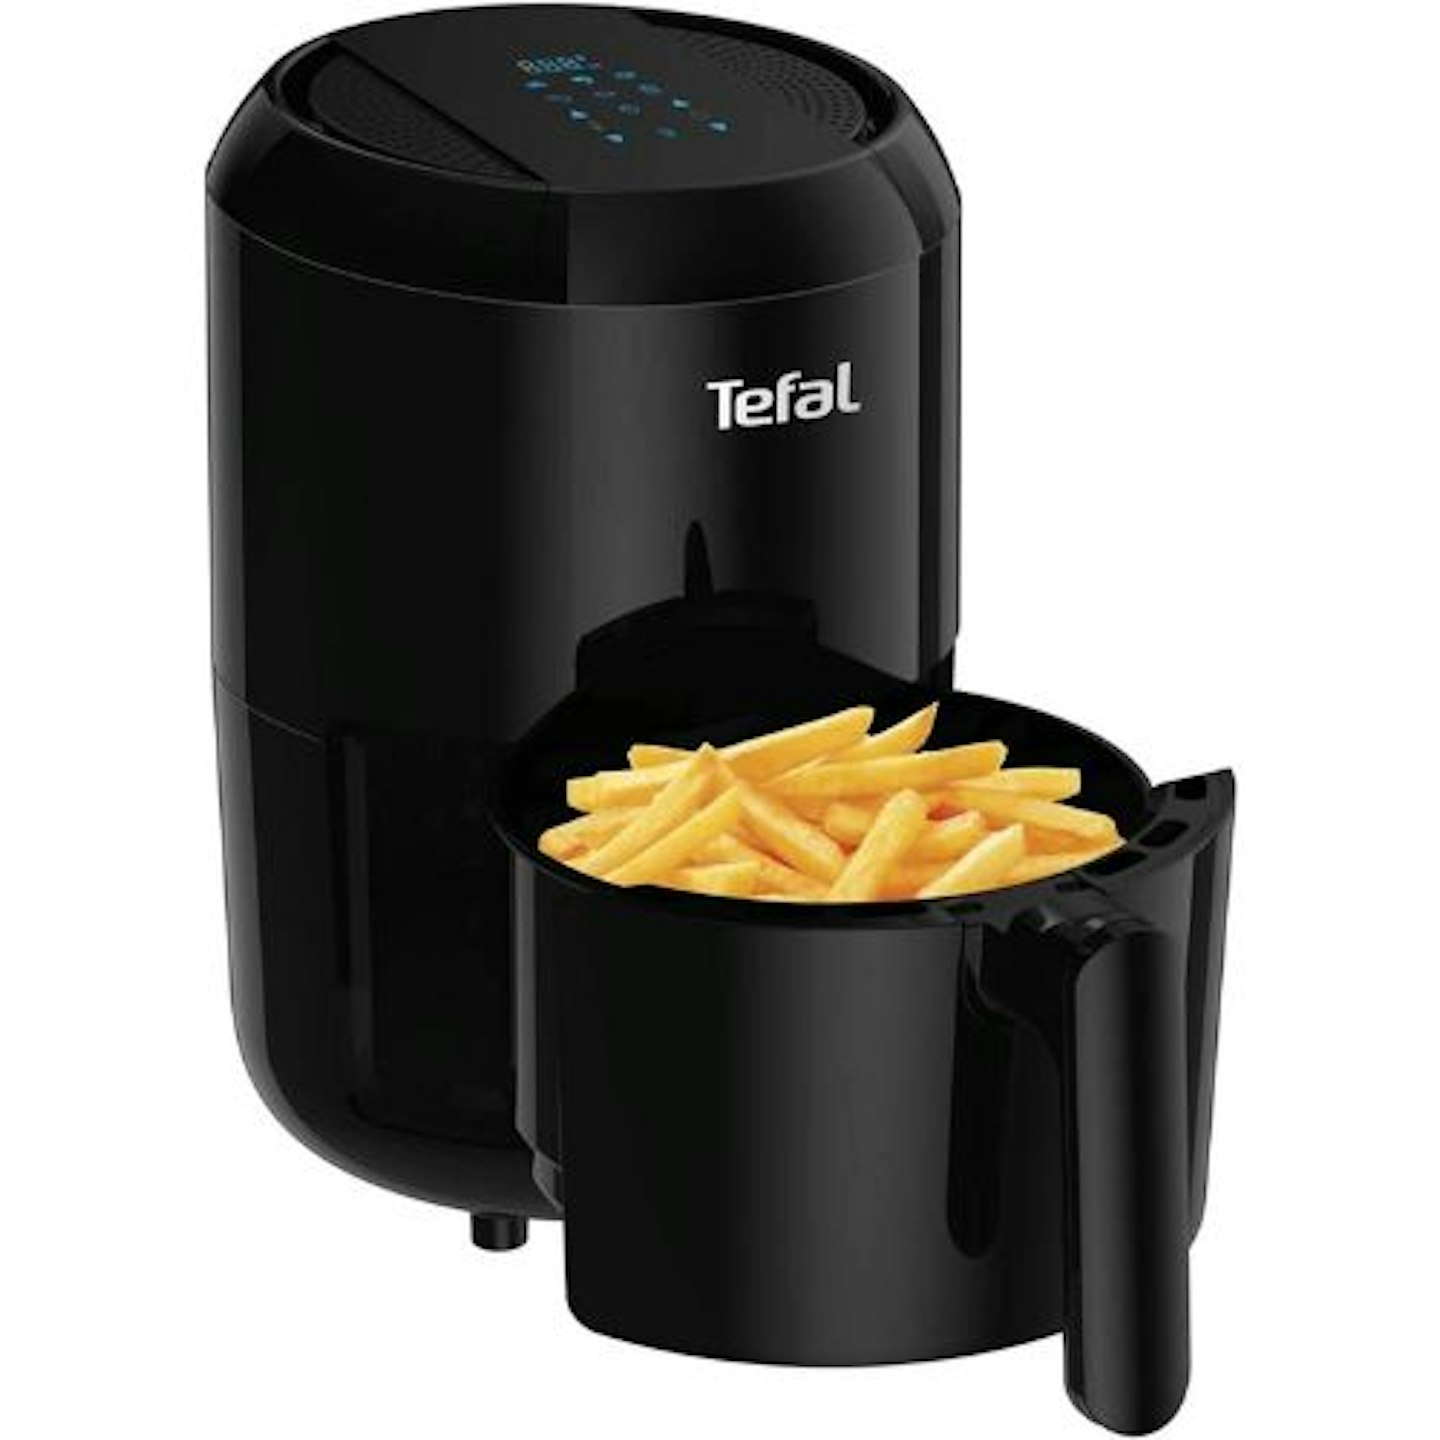 Tefal Easy Fry Compact Digital Health Air Fryer